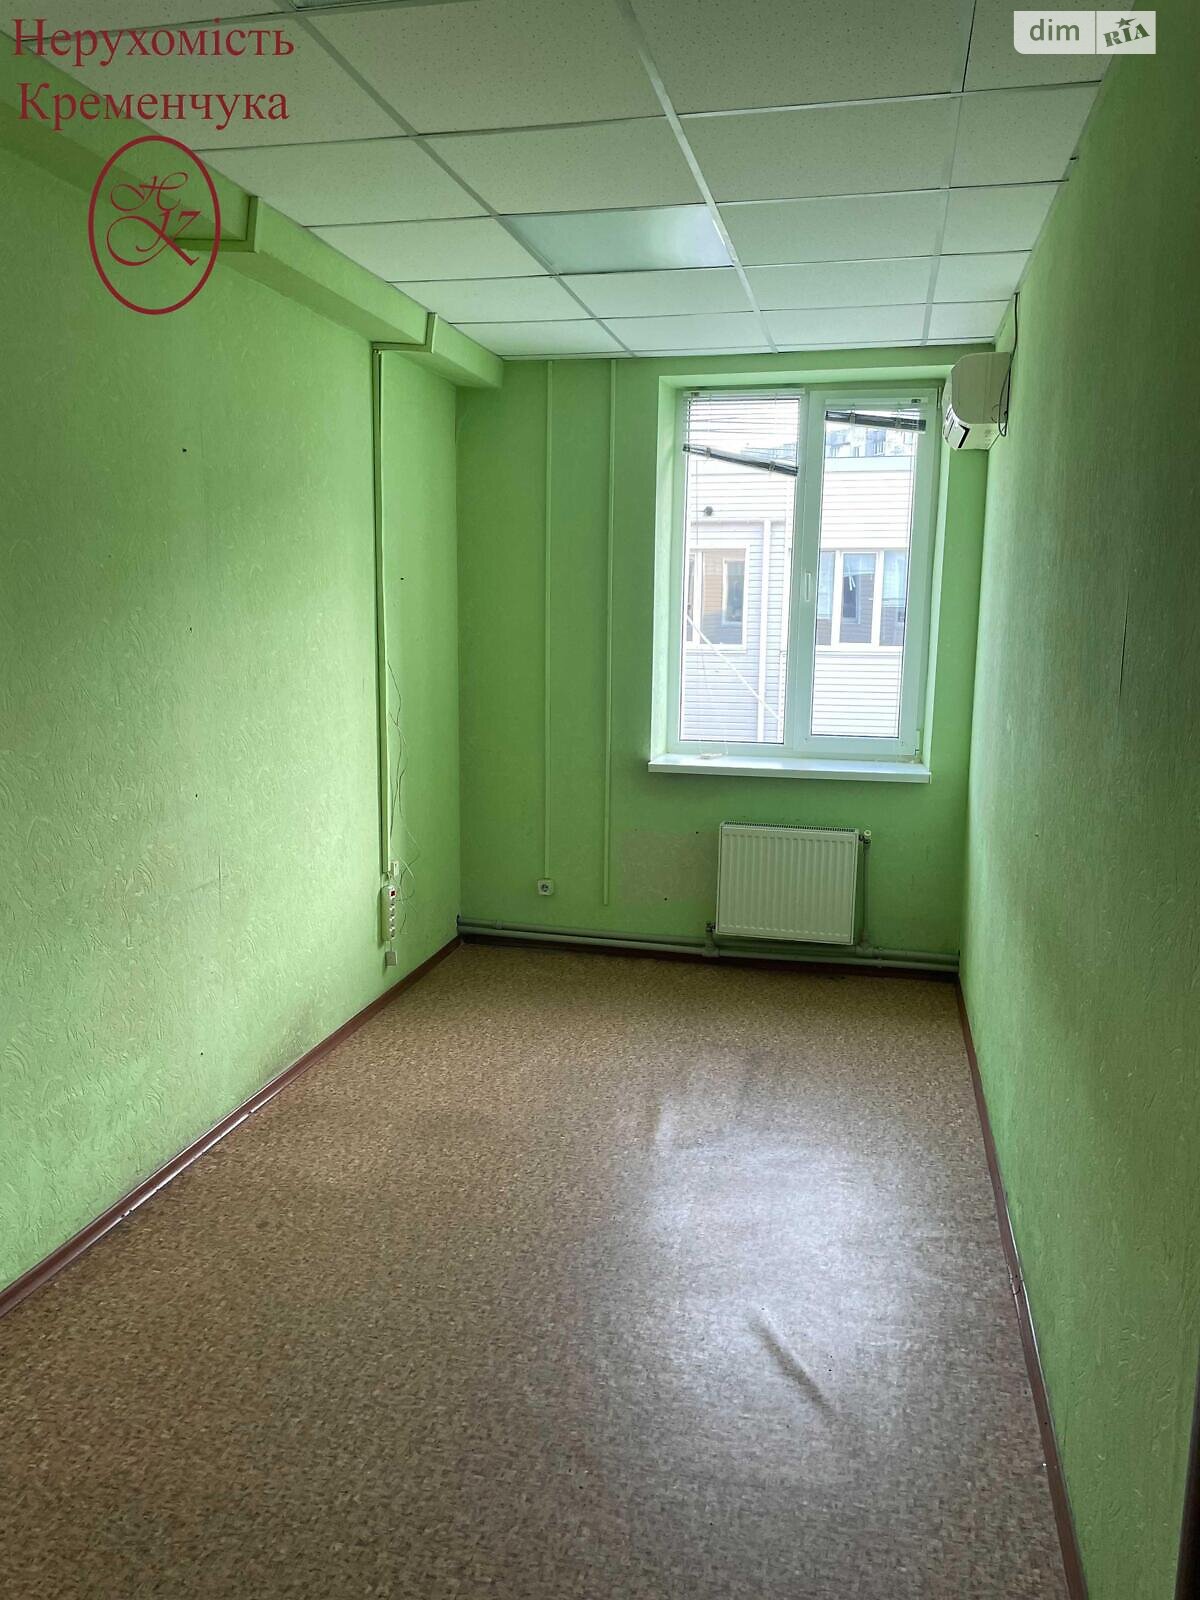 Аренда офисного помещения в Кременчуге, Героев Бреста, помещений - 1, этаж - 2 фото 1